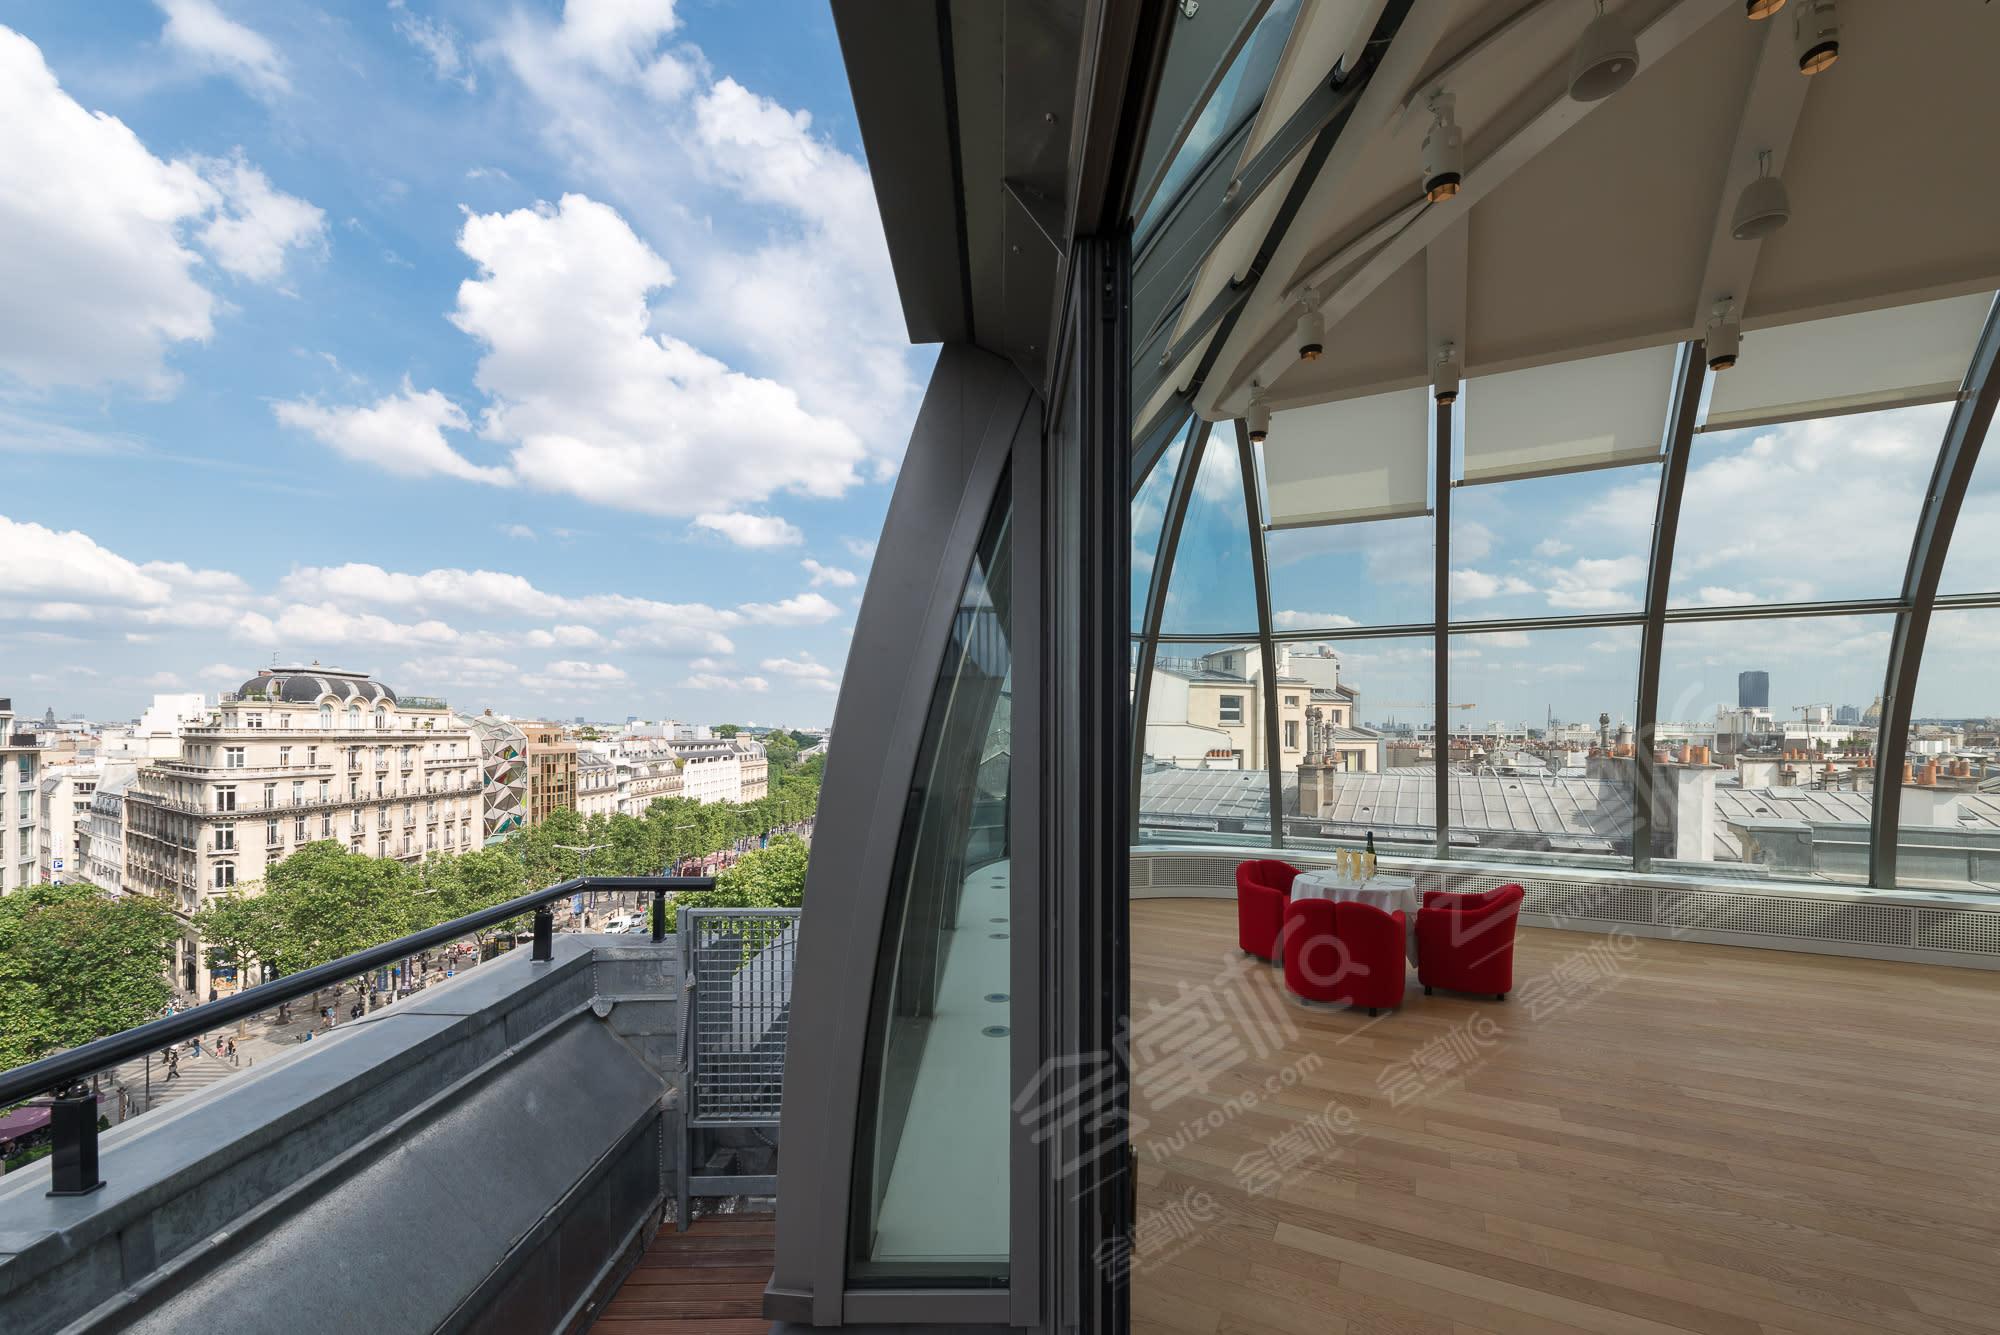 Superbe Rooftop sur les Champs-Elysées avec vue à 180 degrés sur les toits de Paris, la Tour Eiffel et les Invalides